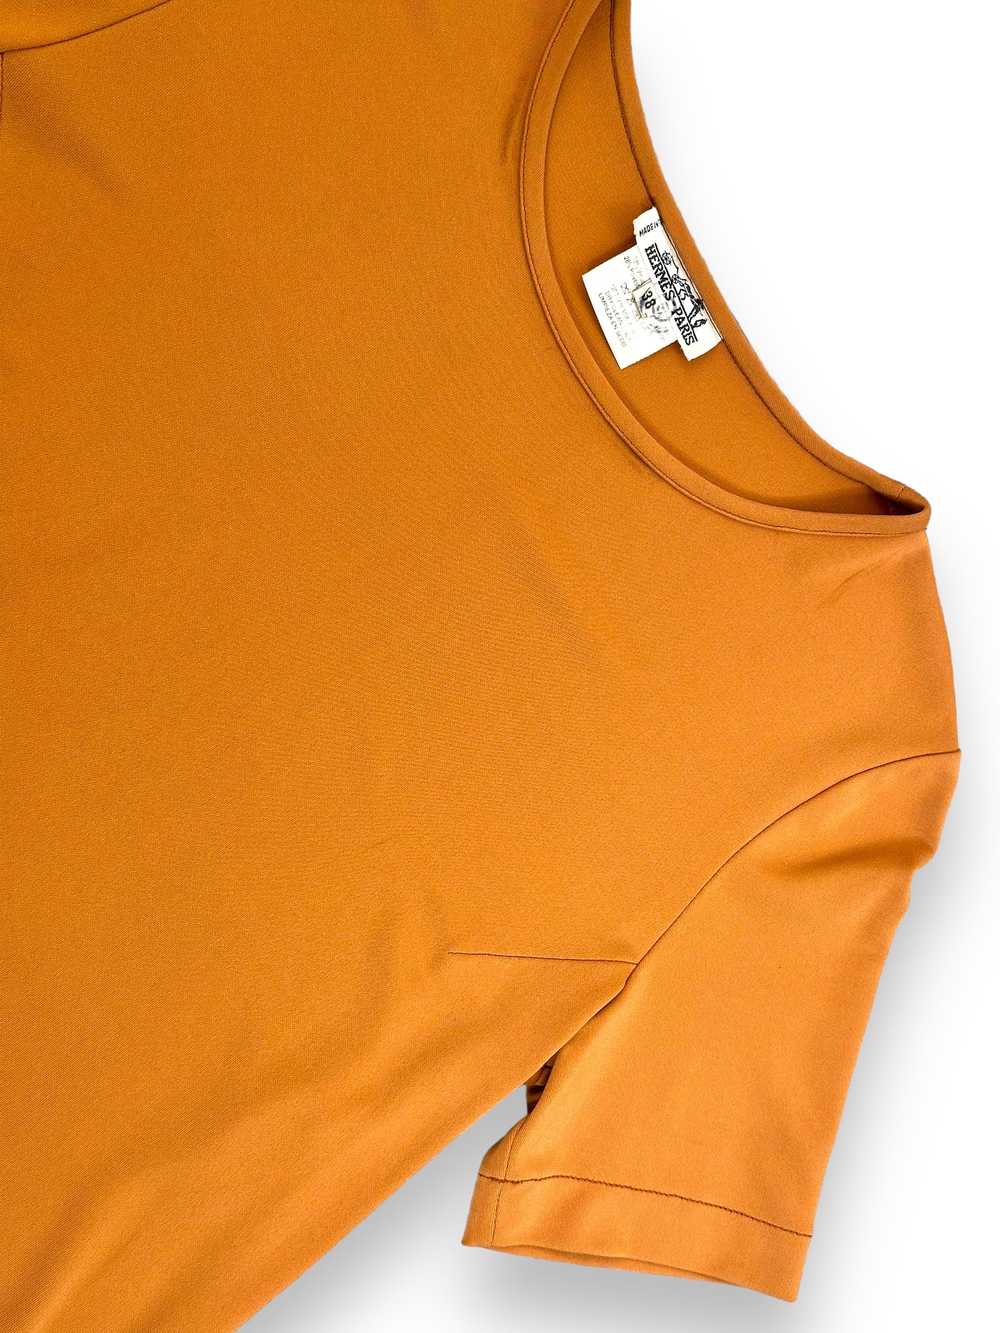 1970s Tan “Hermes” Short Sleeve Nylon T - image 4